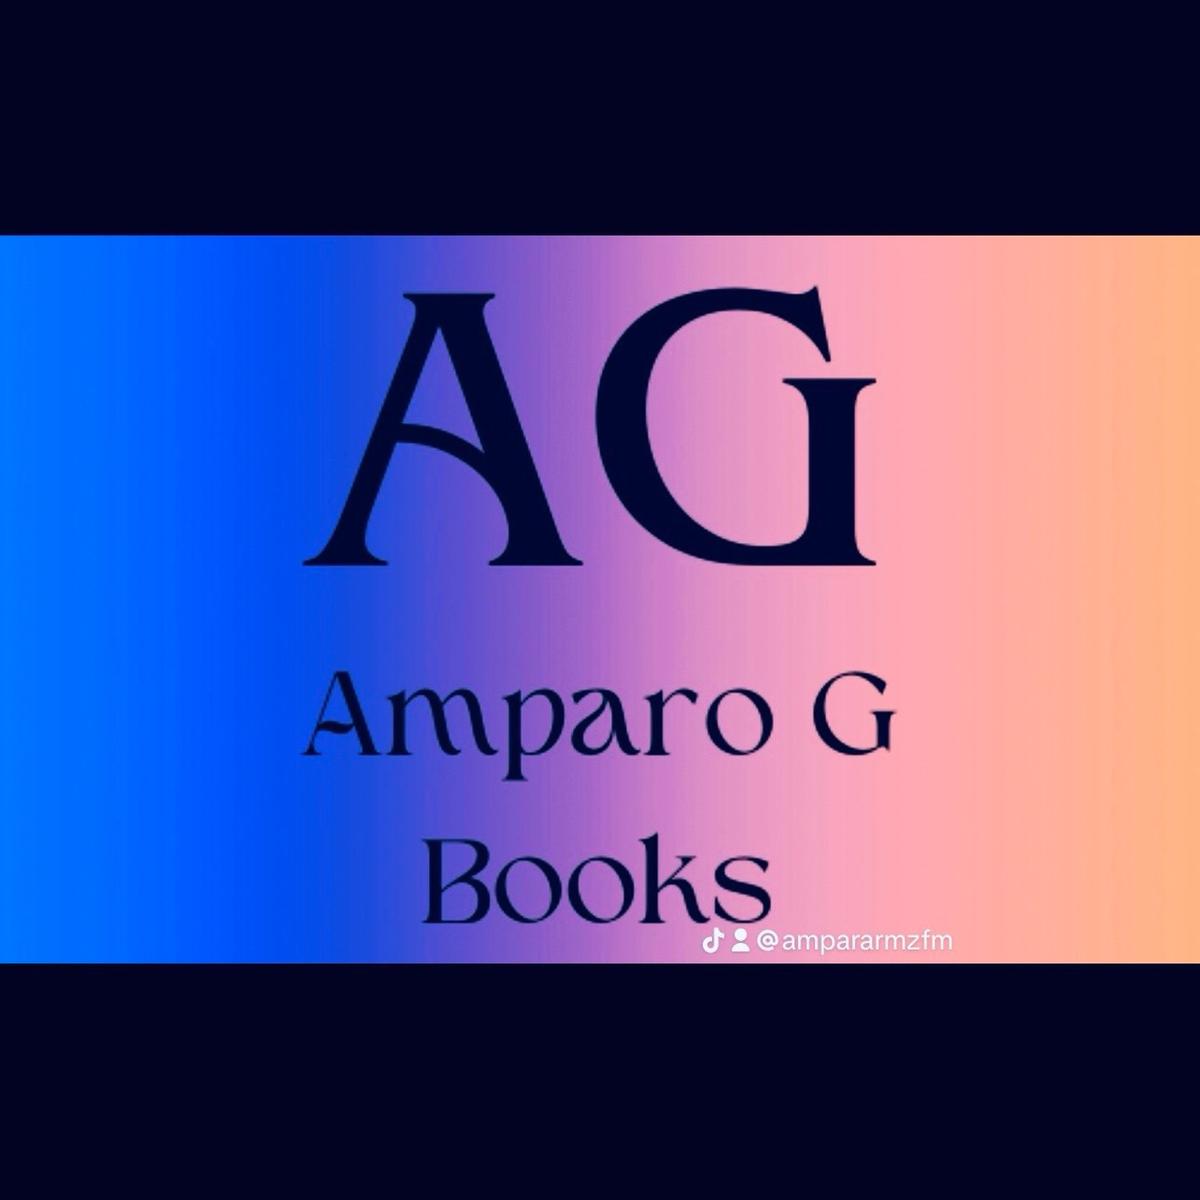 AMPARO G BOOKS 's images